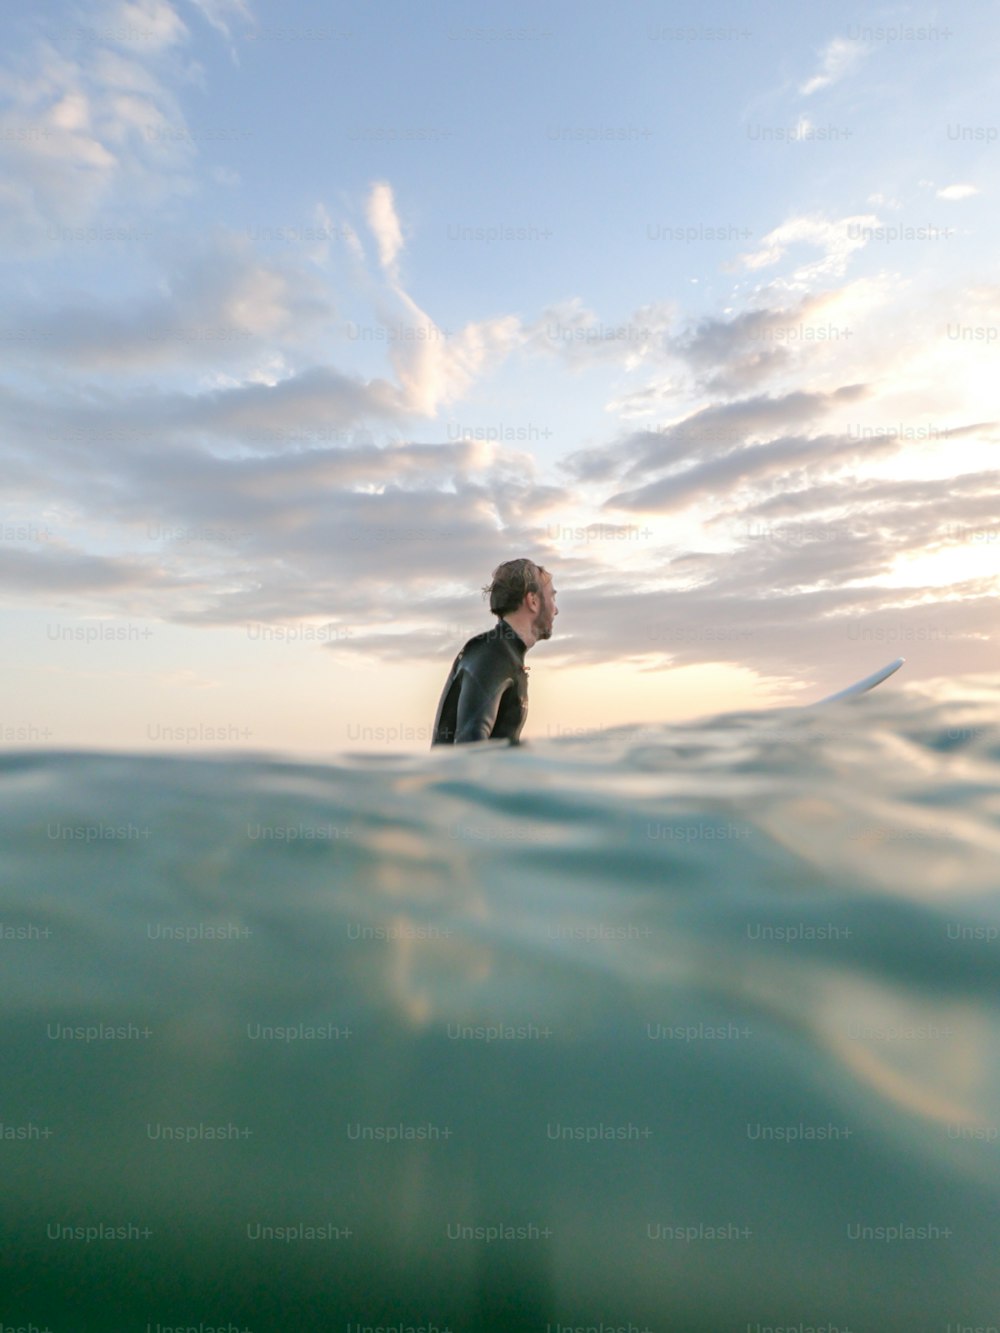 Un uomo in una muta in piedi su una tavola da surf nell'oceano